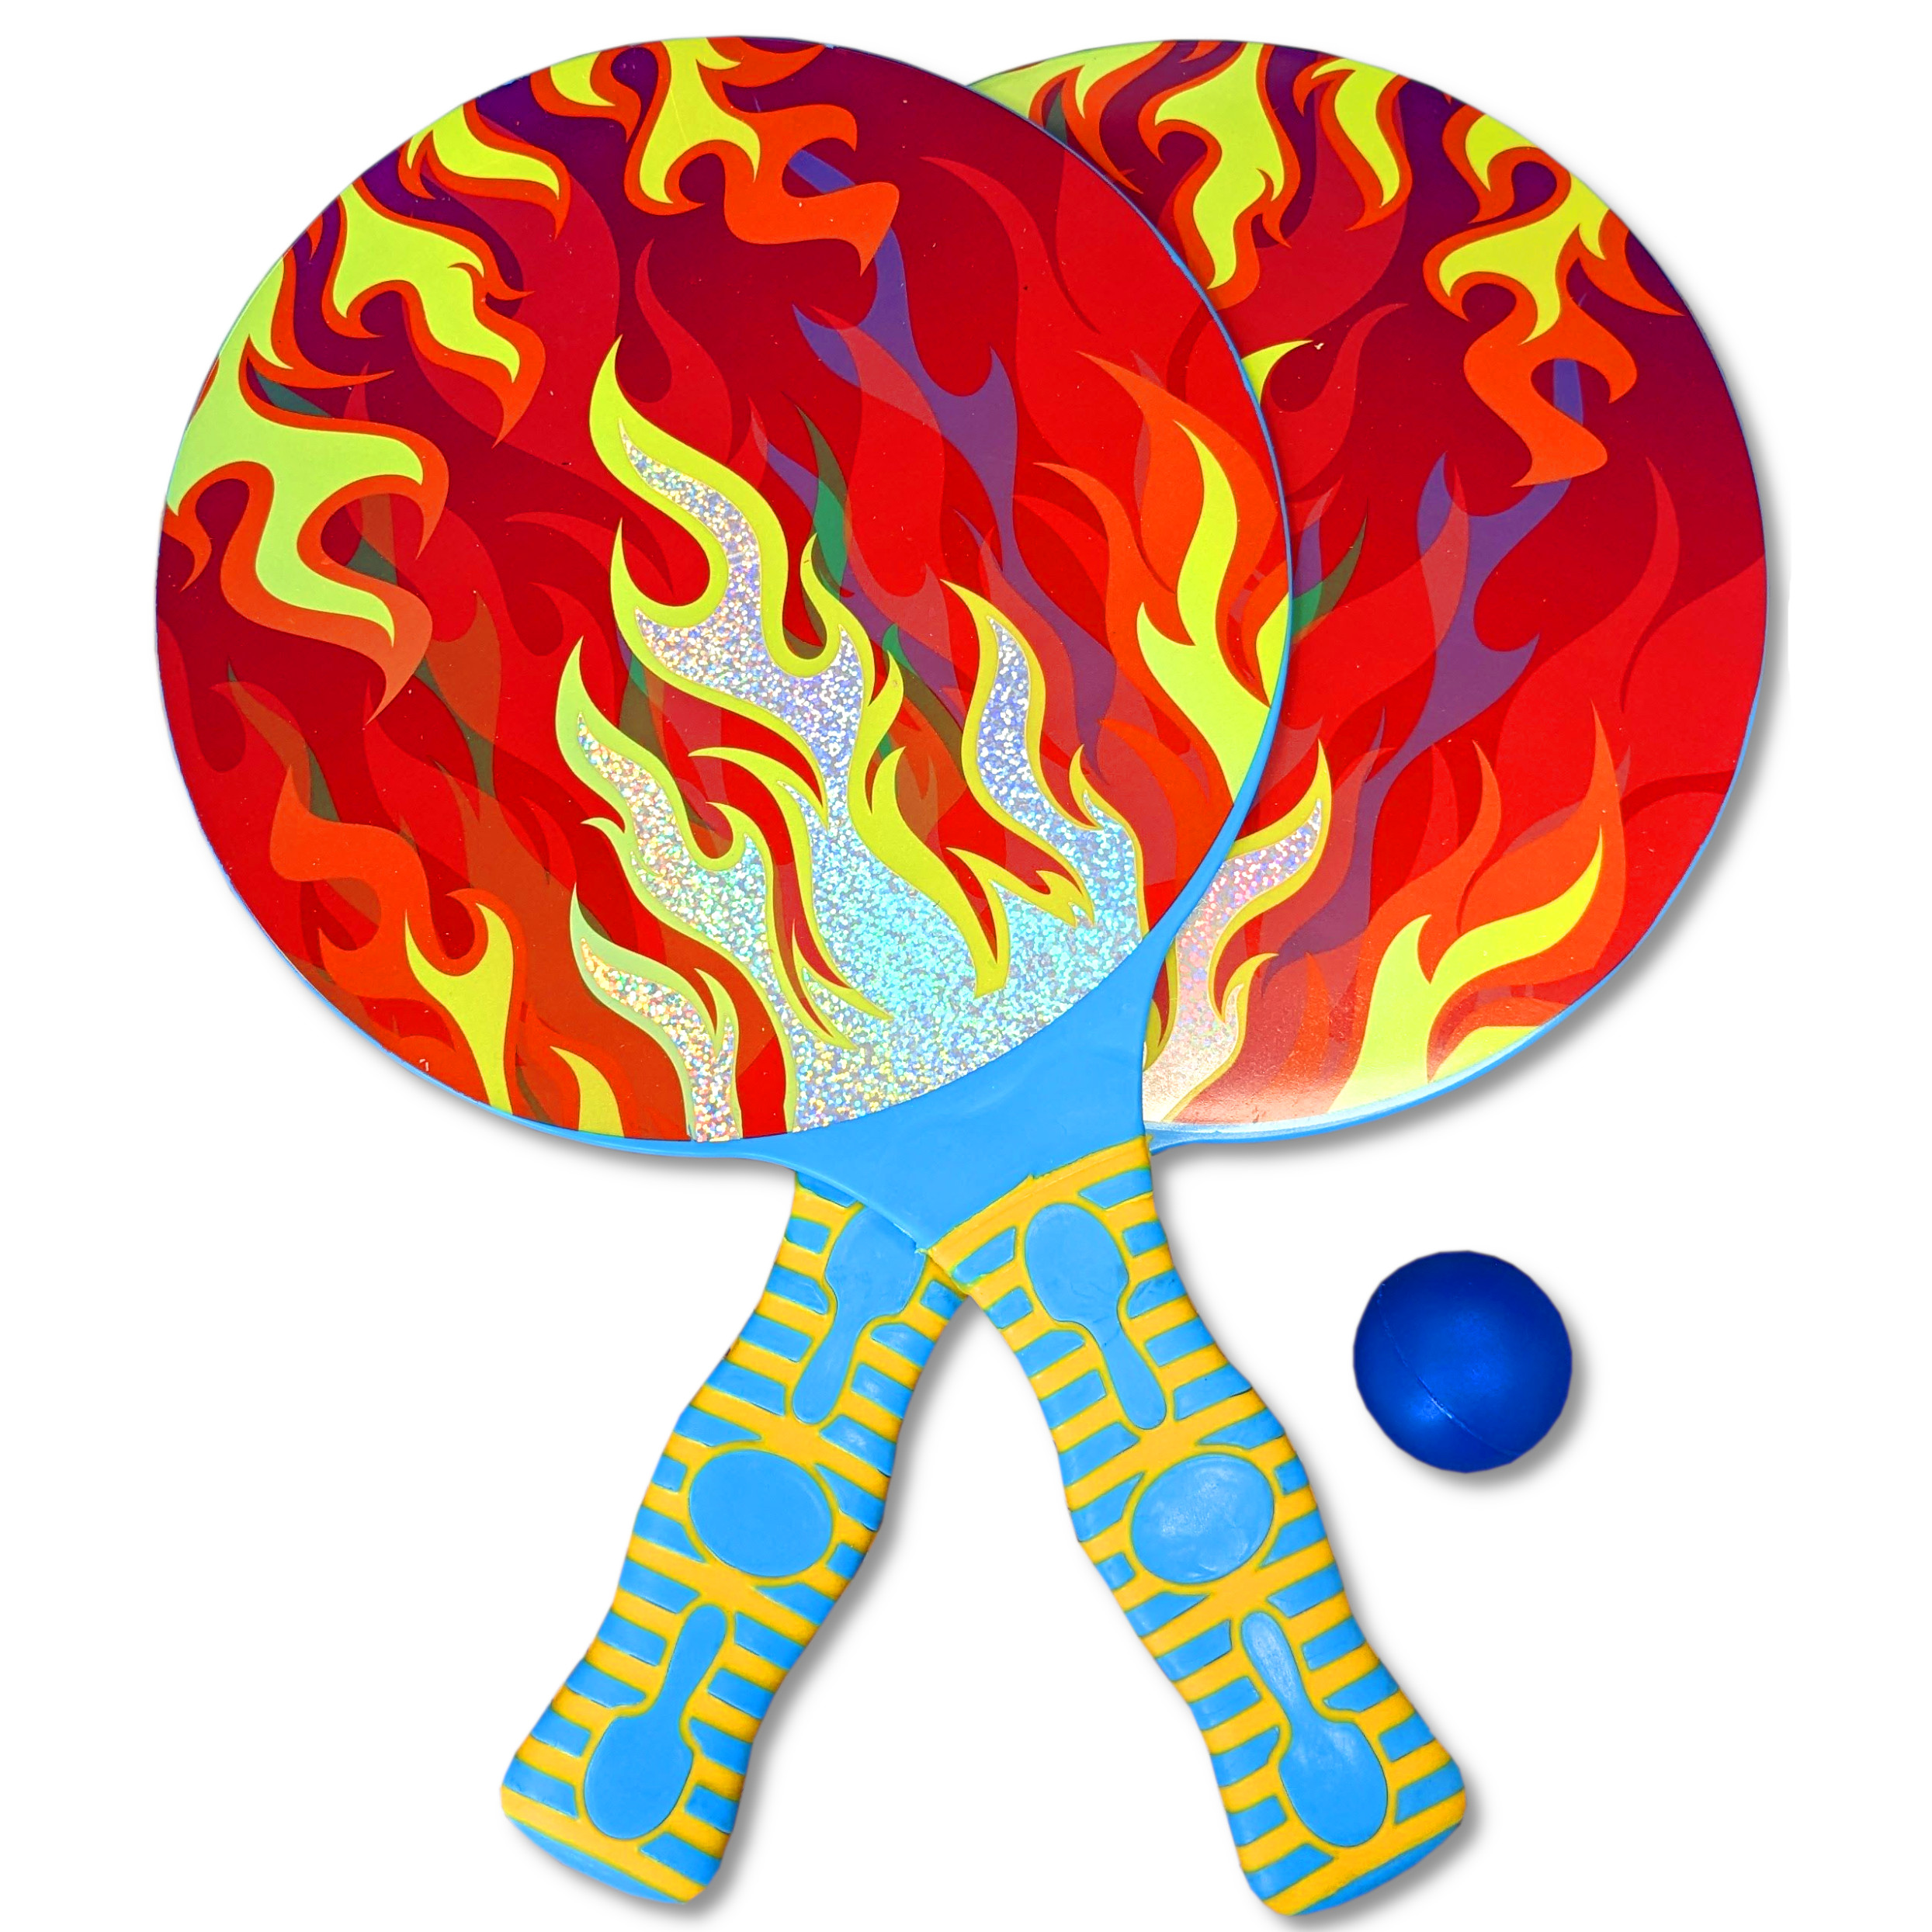 PLAY Ball) Wasserspielzeug TOI-TOYS Schläger GO Beach (2 - + Tennis Flames